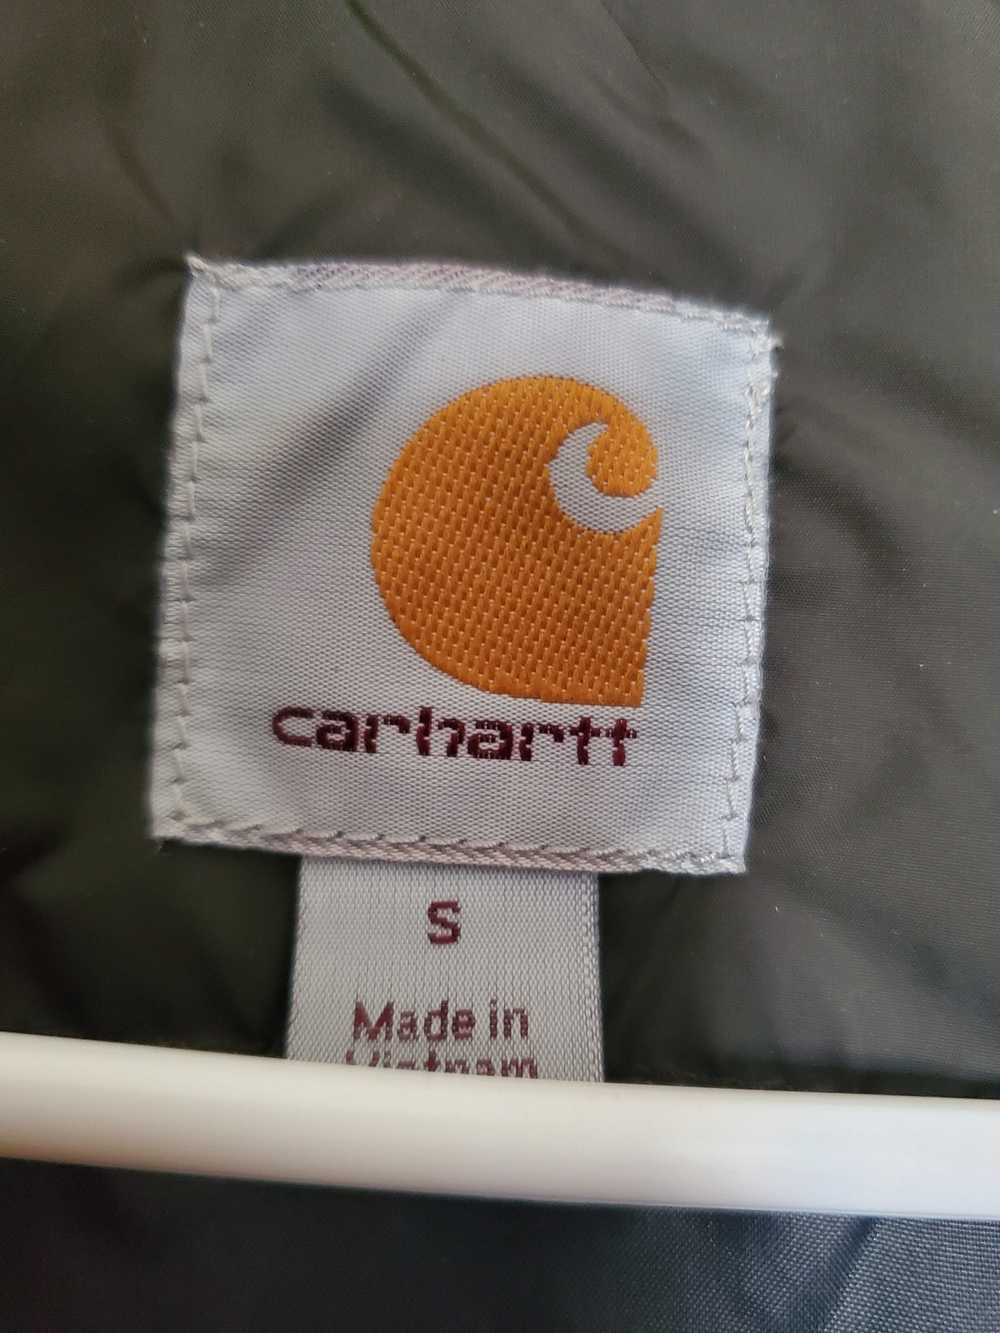 Carhartt Carhartt Lightweight Insulated Jacket - image 3